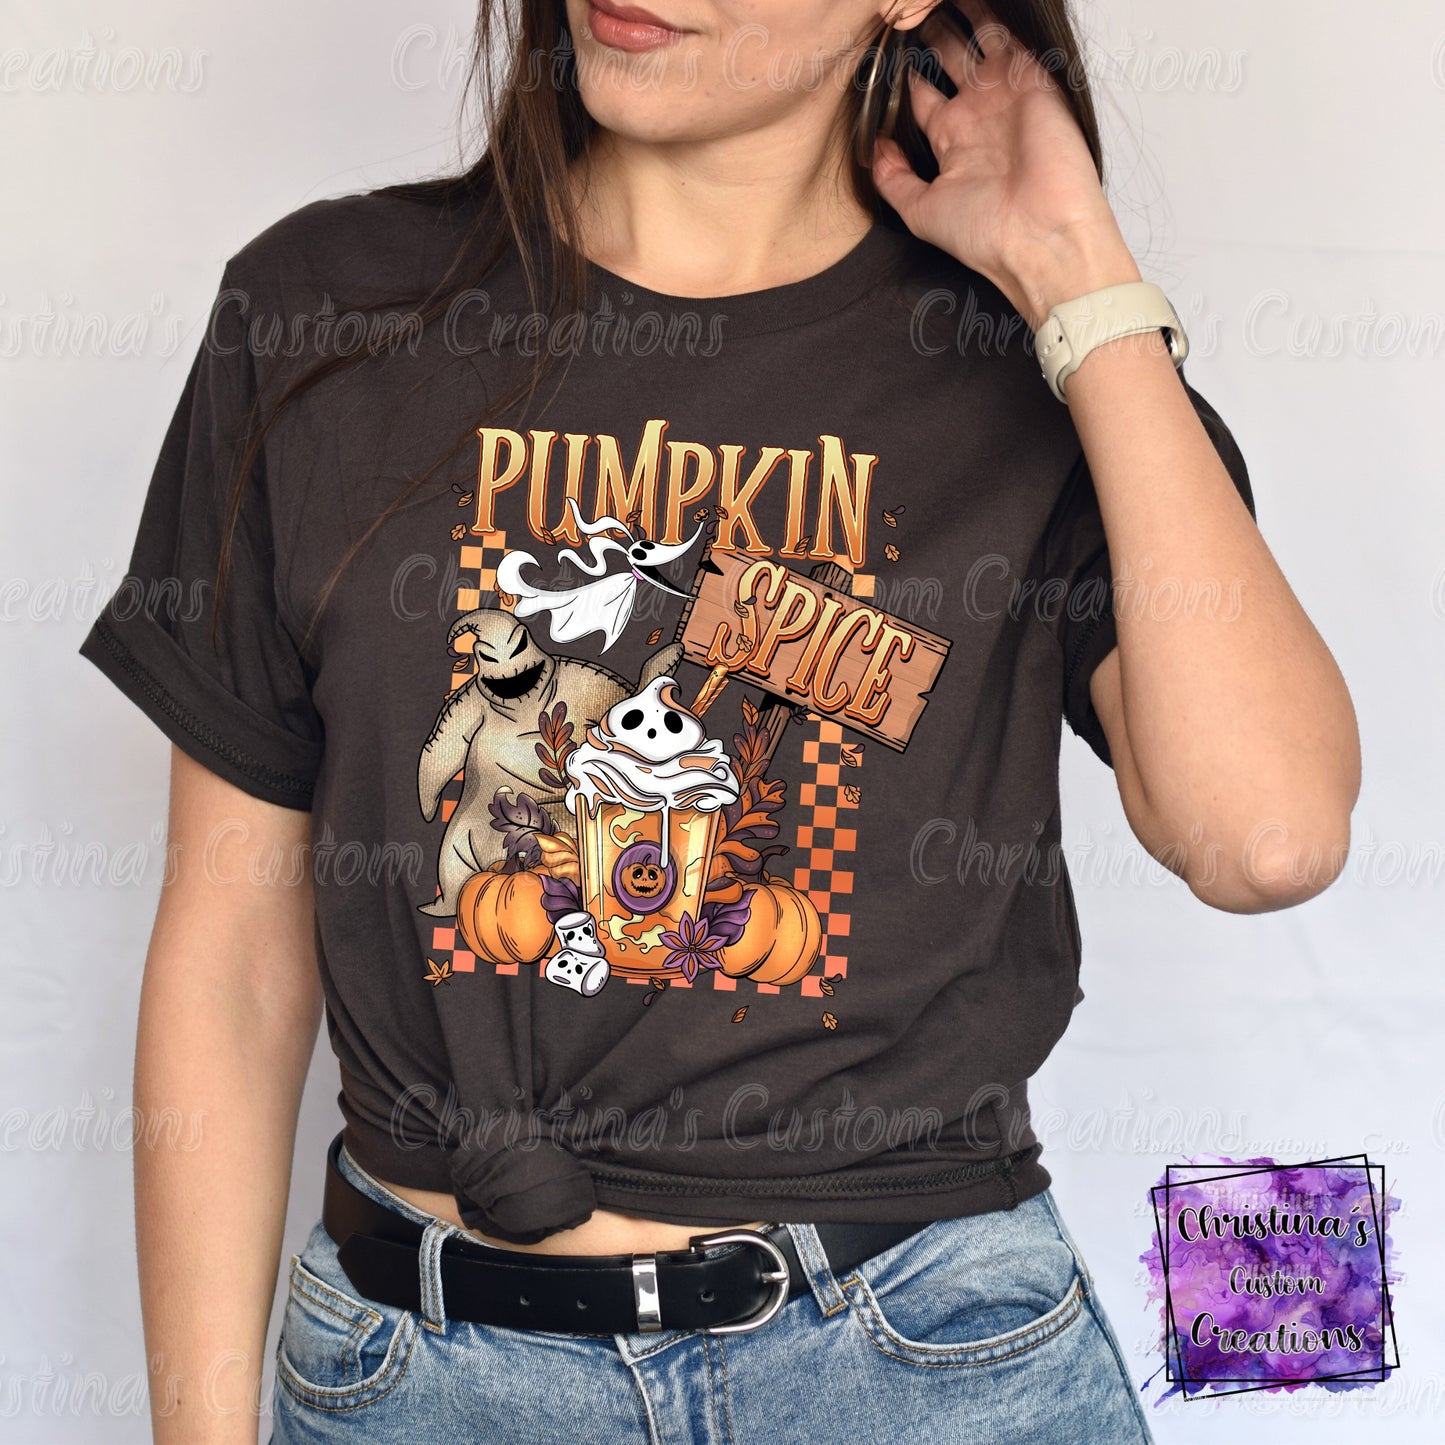 Pumpkin Spice T-Shirt | Trendy Halloween/Fall Shirt | Fast Shipping | Super Soft Shirts for Men/Women/Kid's